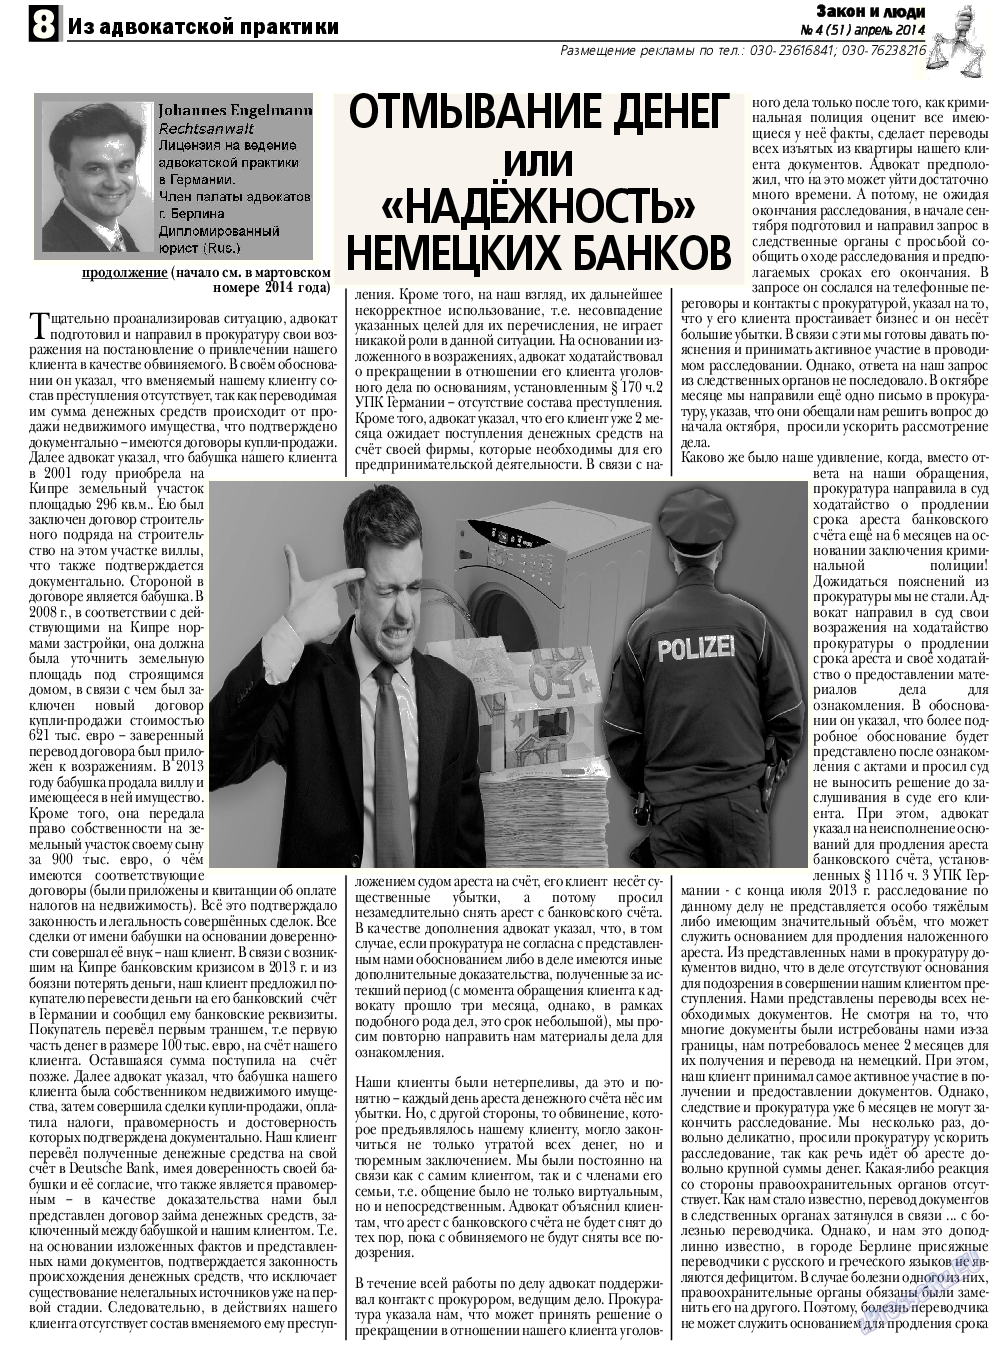 Закон и люди, газета. 2014 №4 стр.8